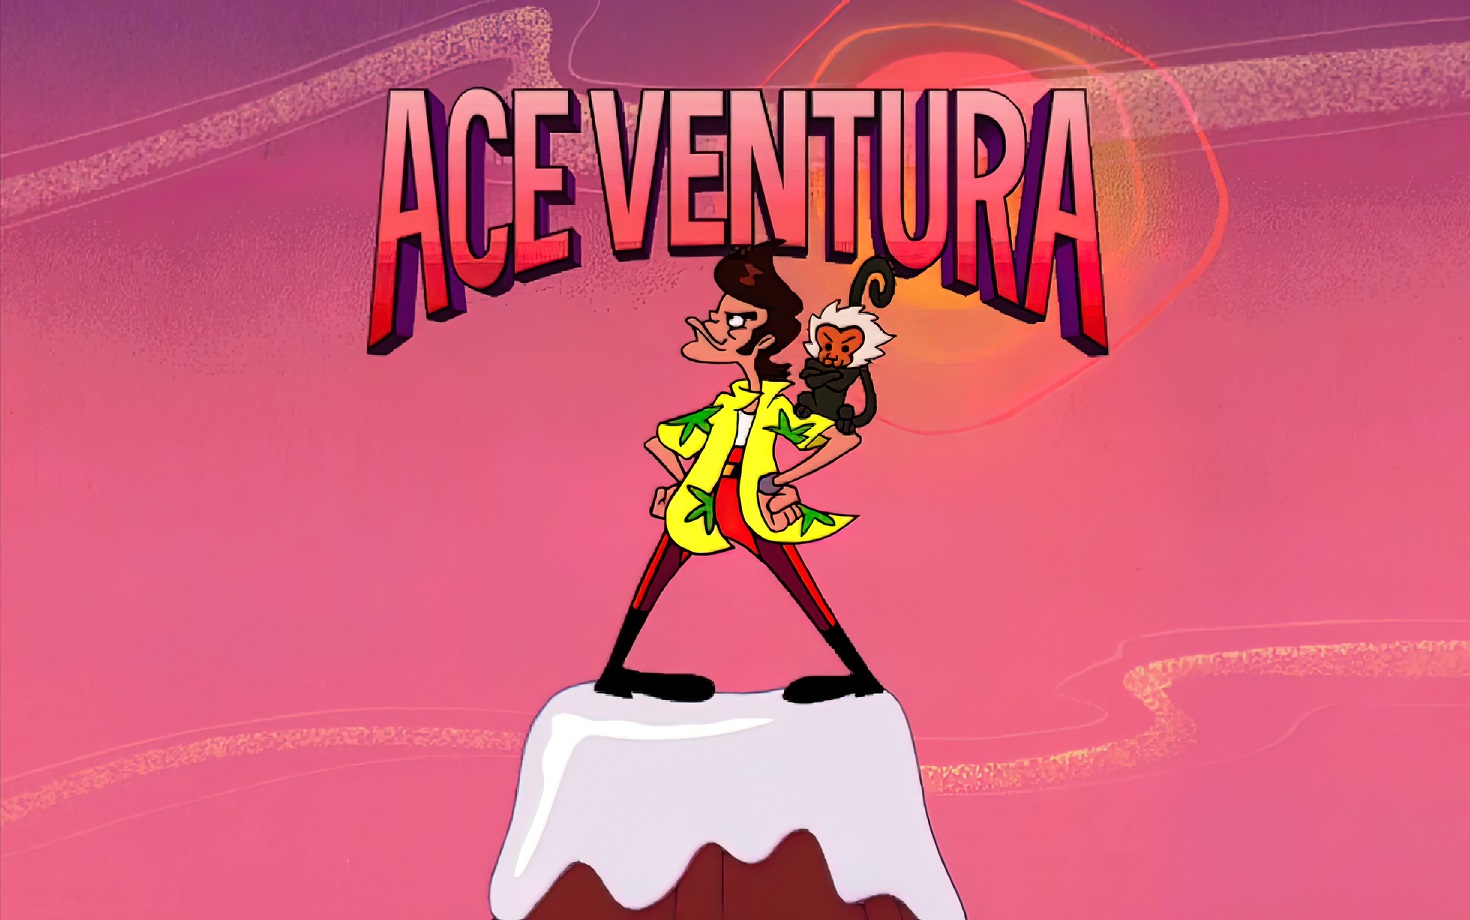 Ace Ventura – recenzja gry przygodowej